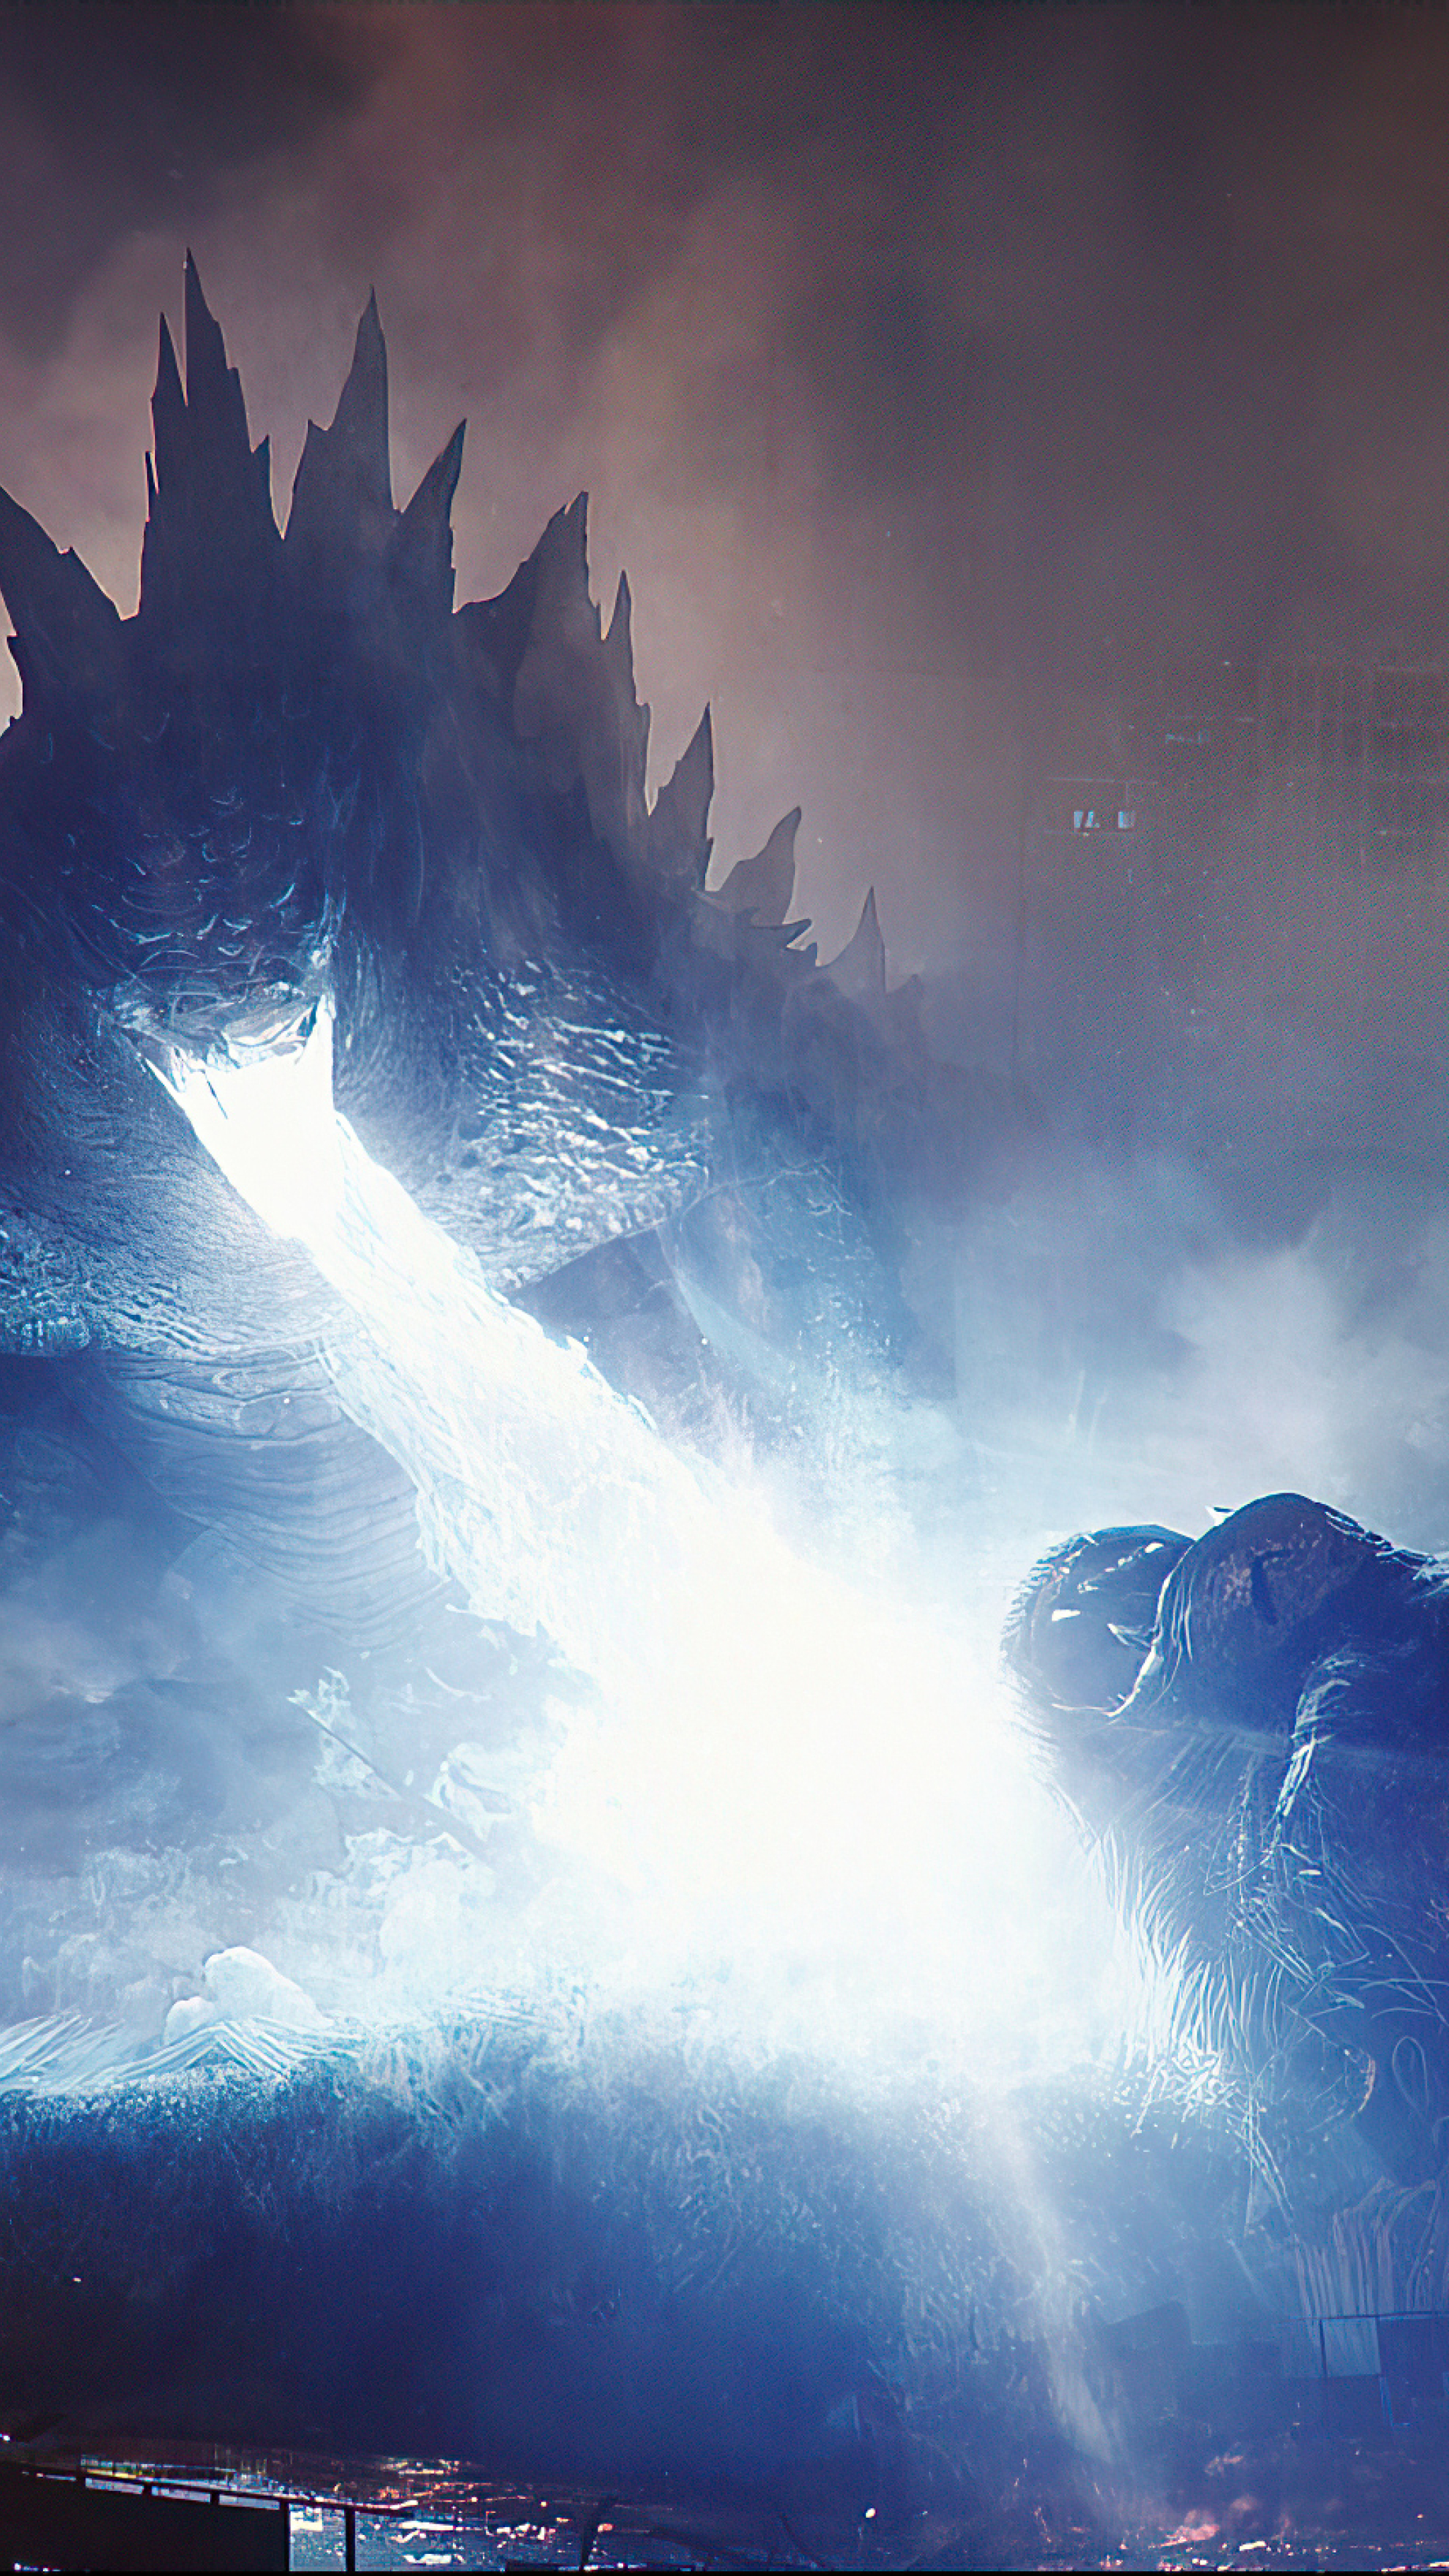 2021 Godzilla Vs. Kong